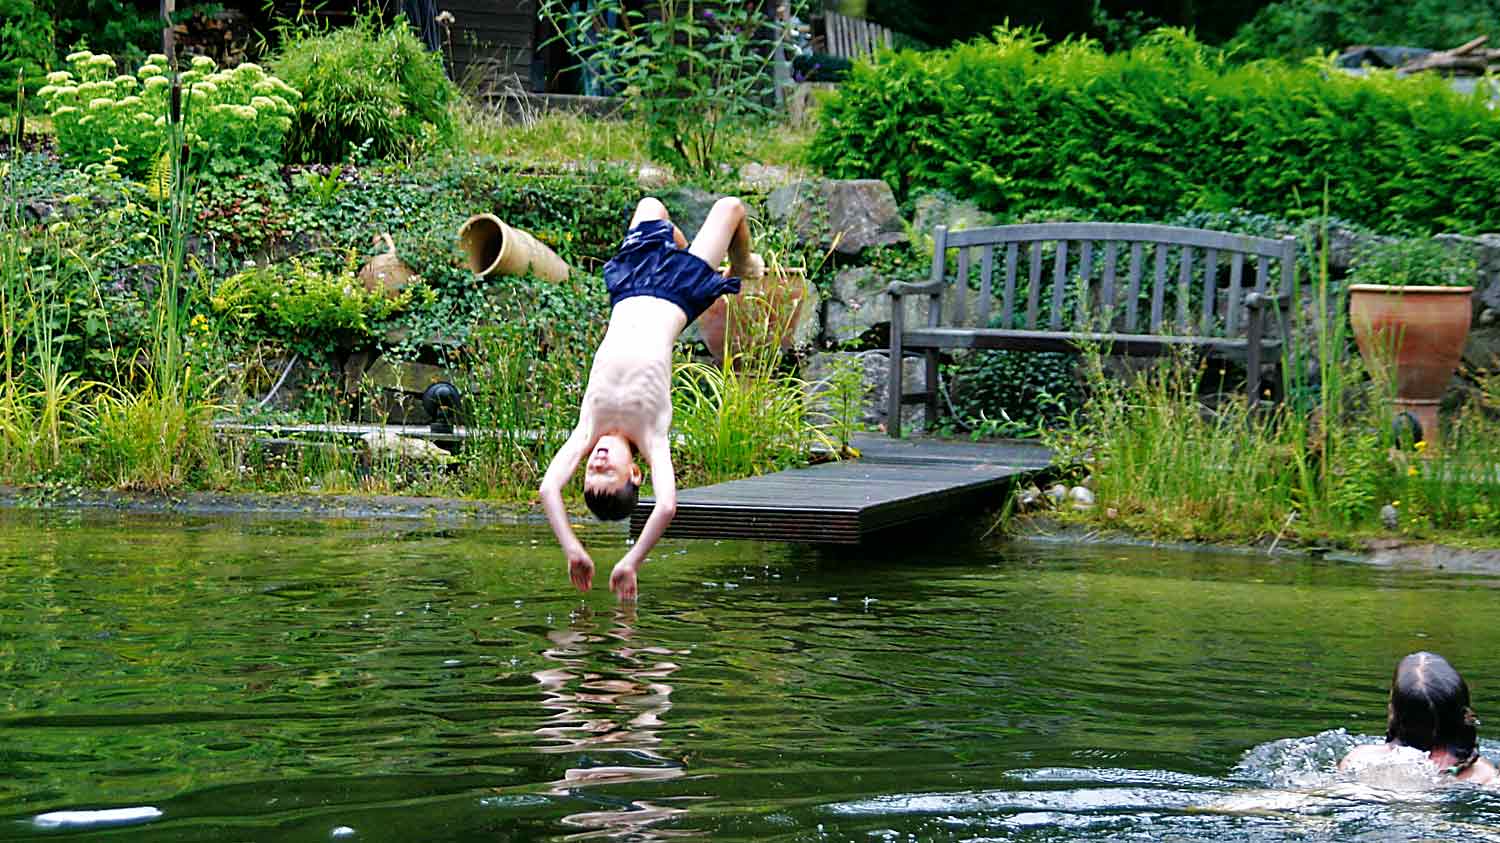 Ein Junge springt mit einem Rückwärtssalto in einen Schwimmteich